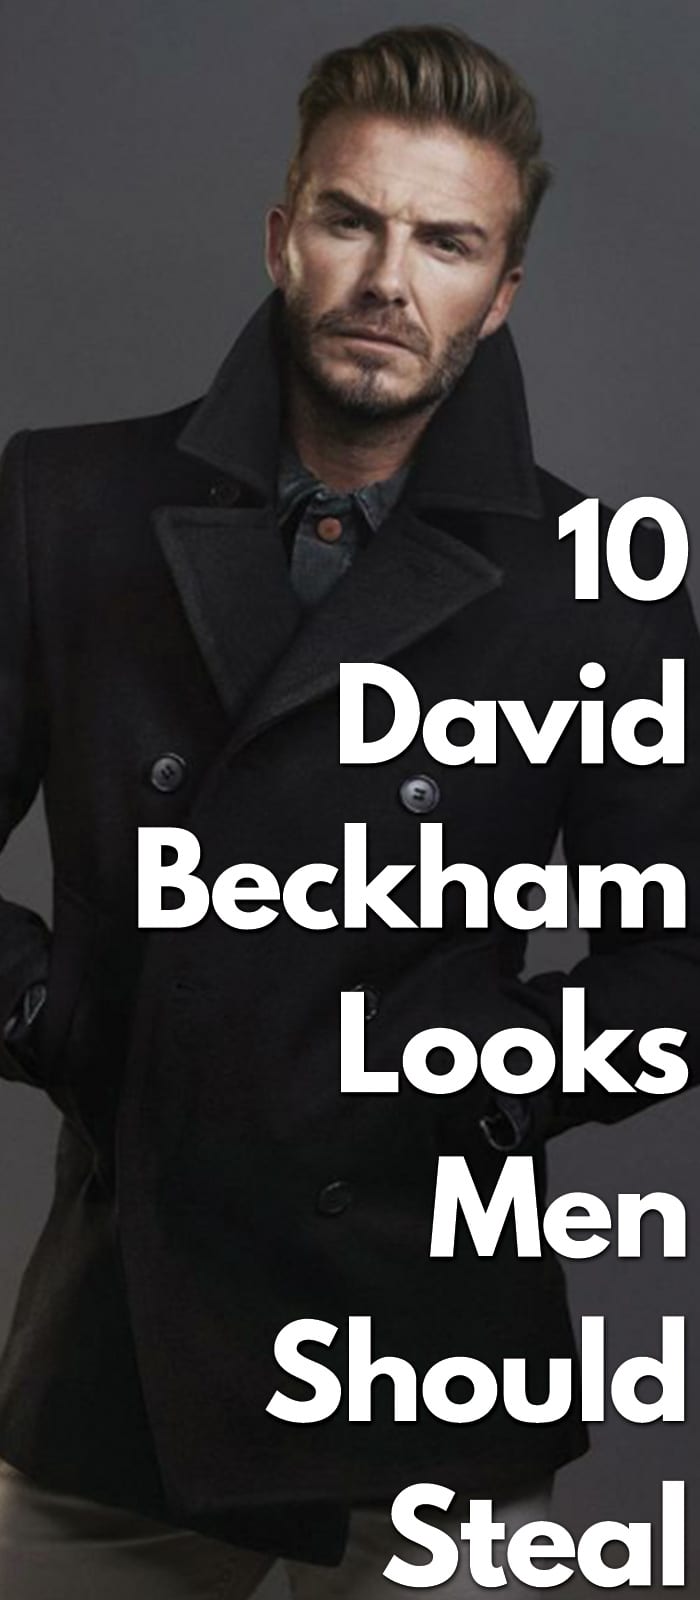 10-David-Beckham-Looks-Men-Should-Steal.